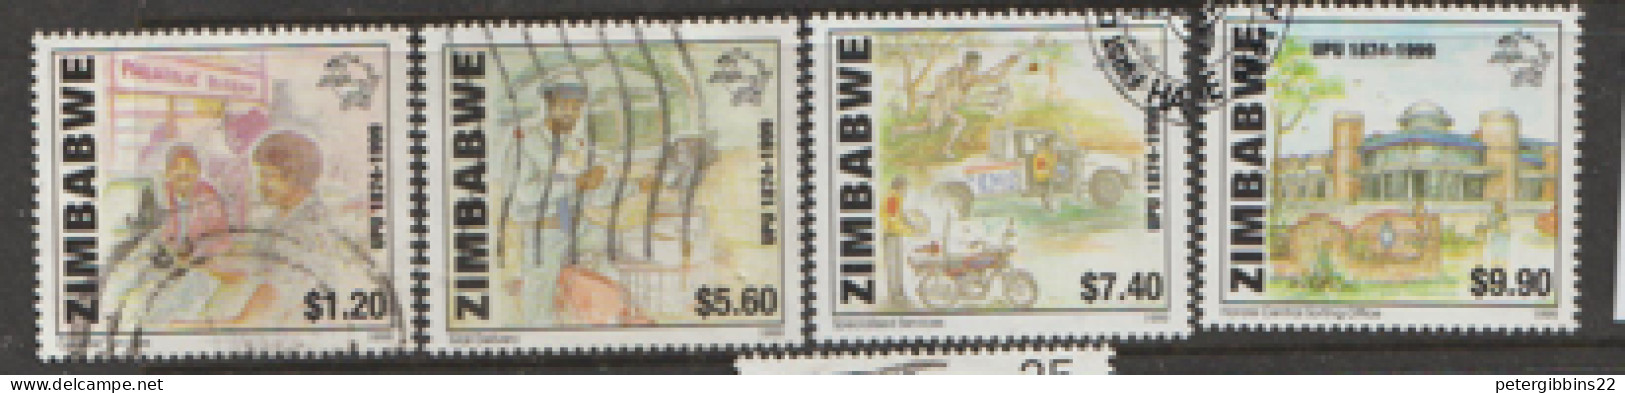 Zimbabwe  1998  SG 980-3  U P U   Fine Used - Zimbabwe (1980-...)